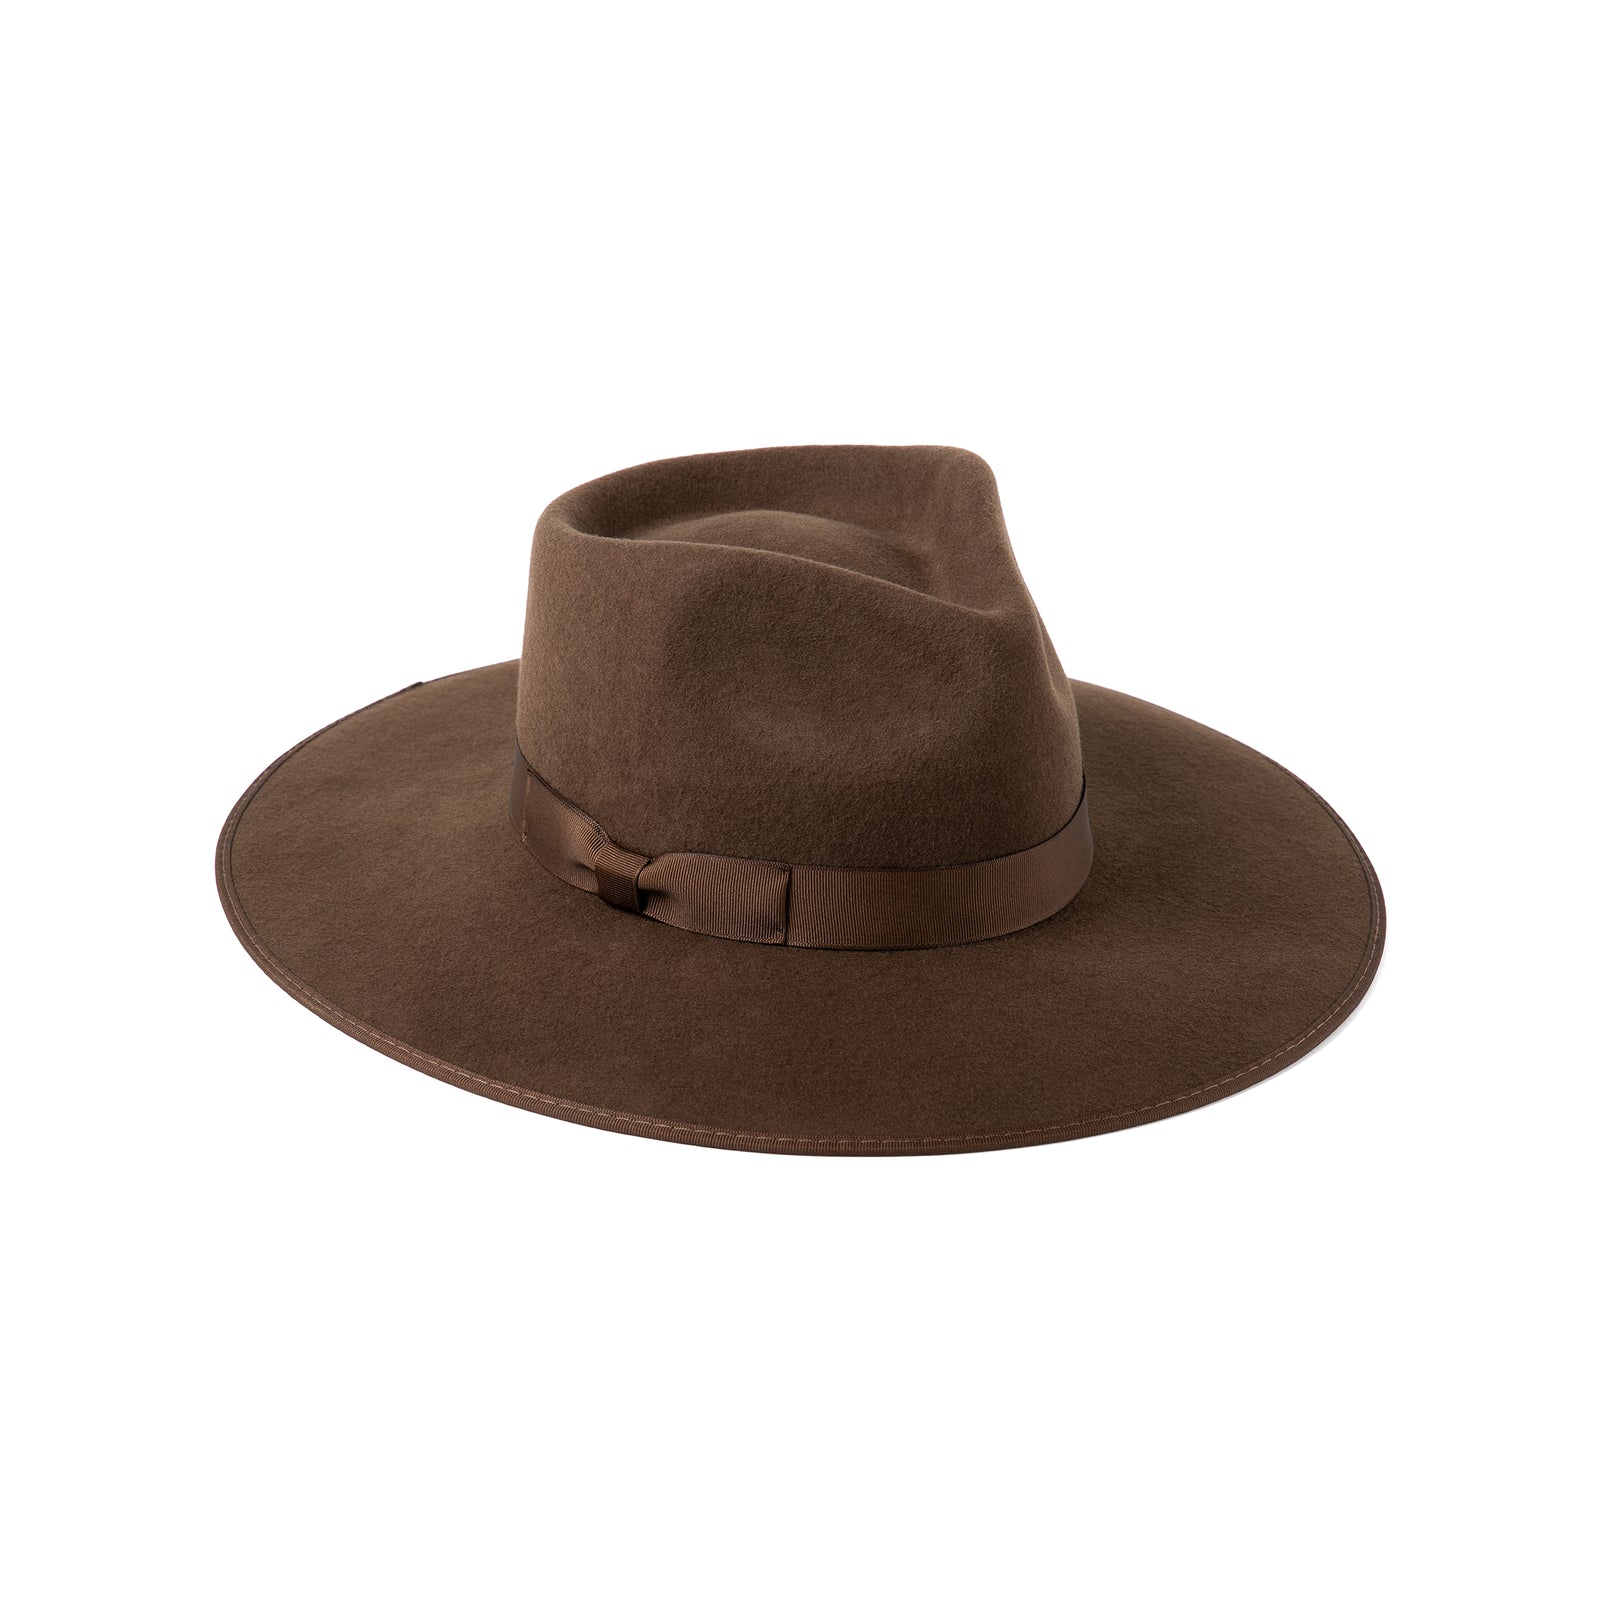 Hat - Coco rancher (dark brown)